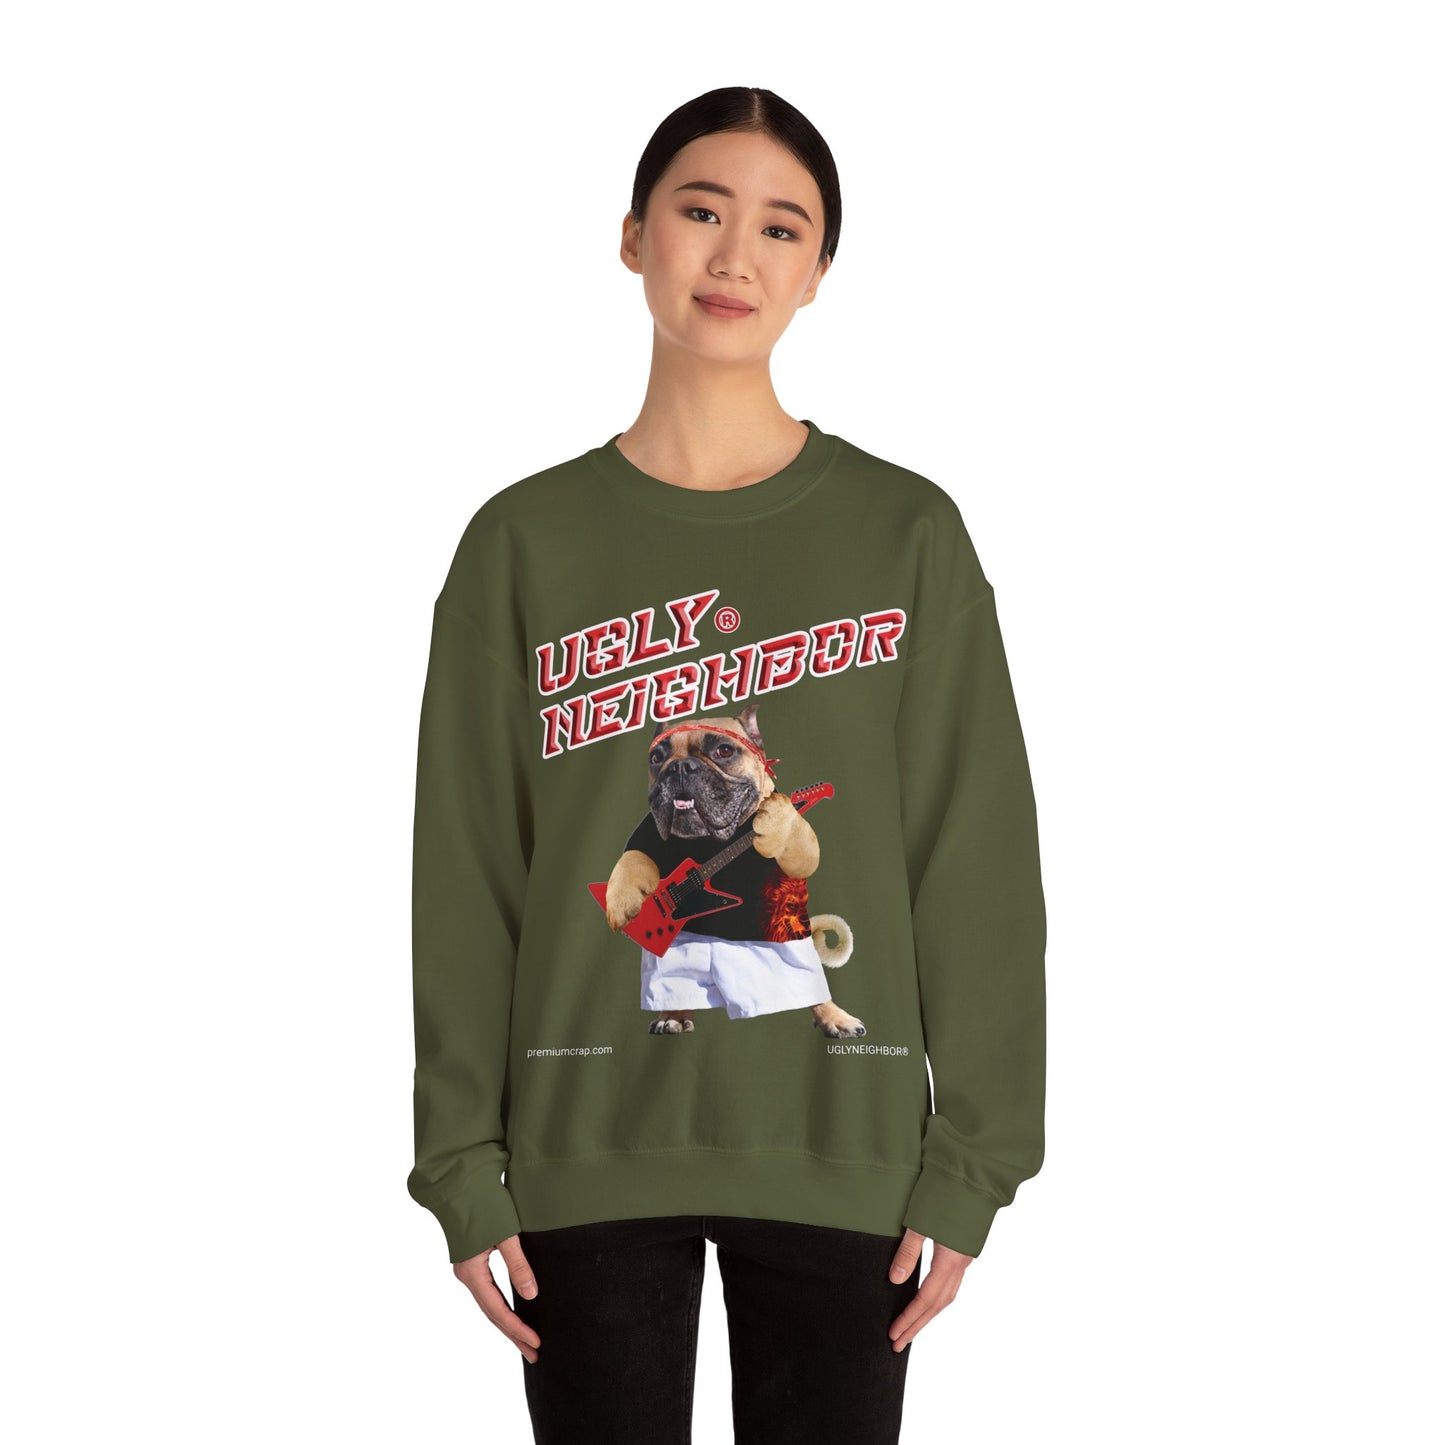 Ugly Neighbor Waggish Sweatshirt